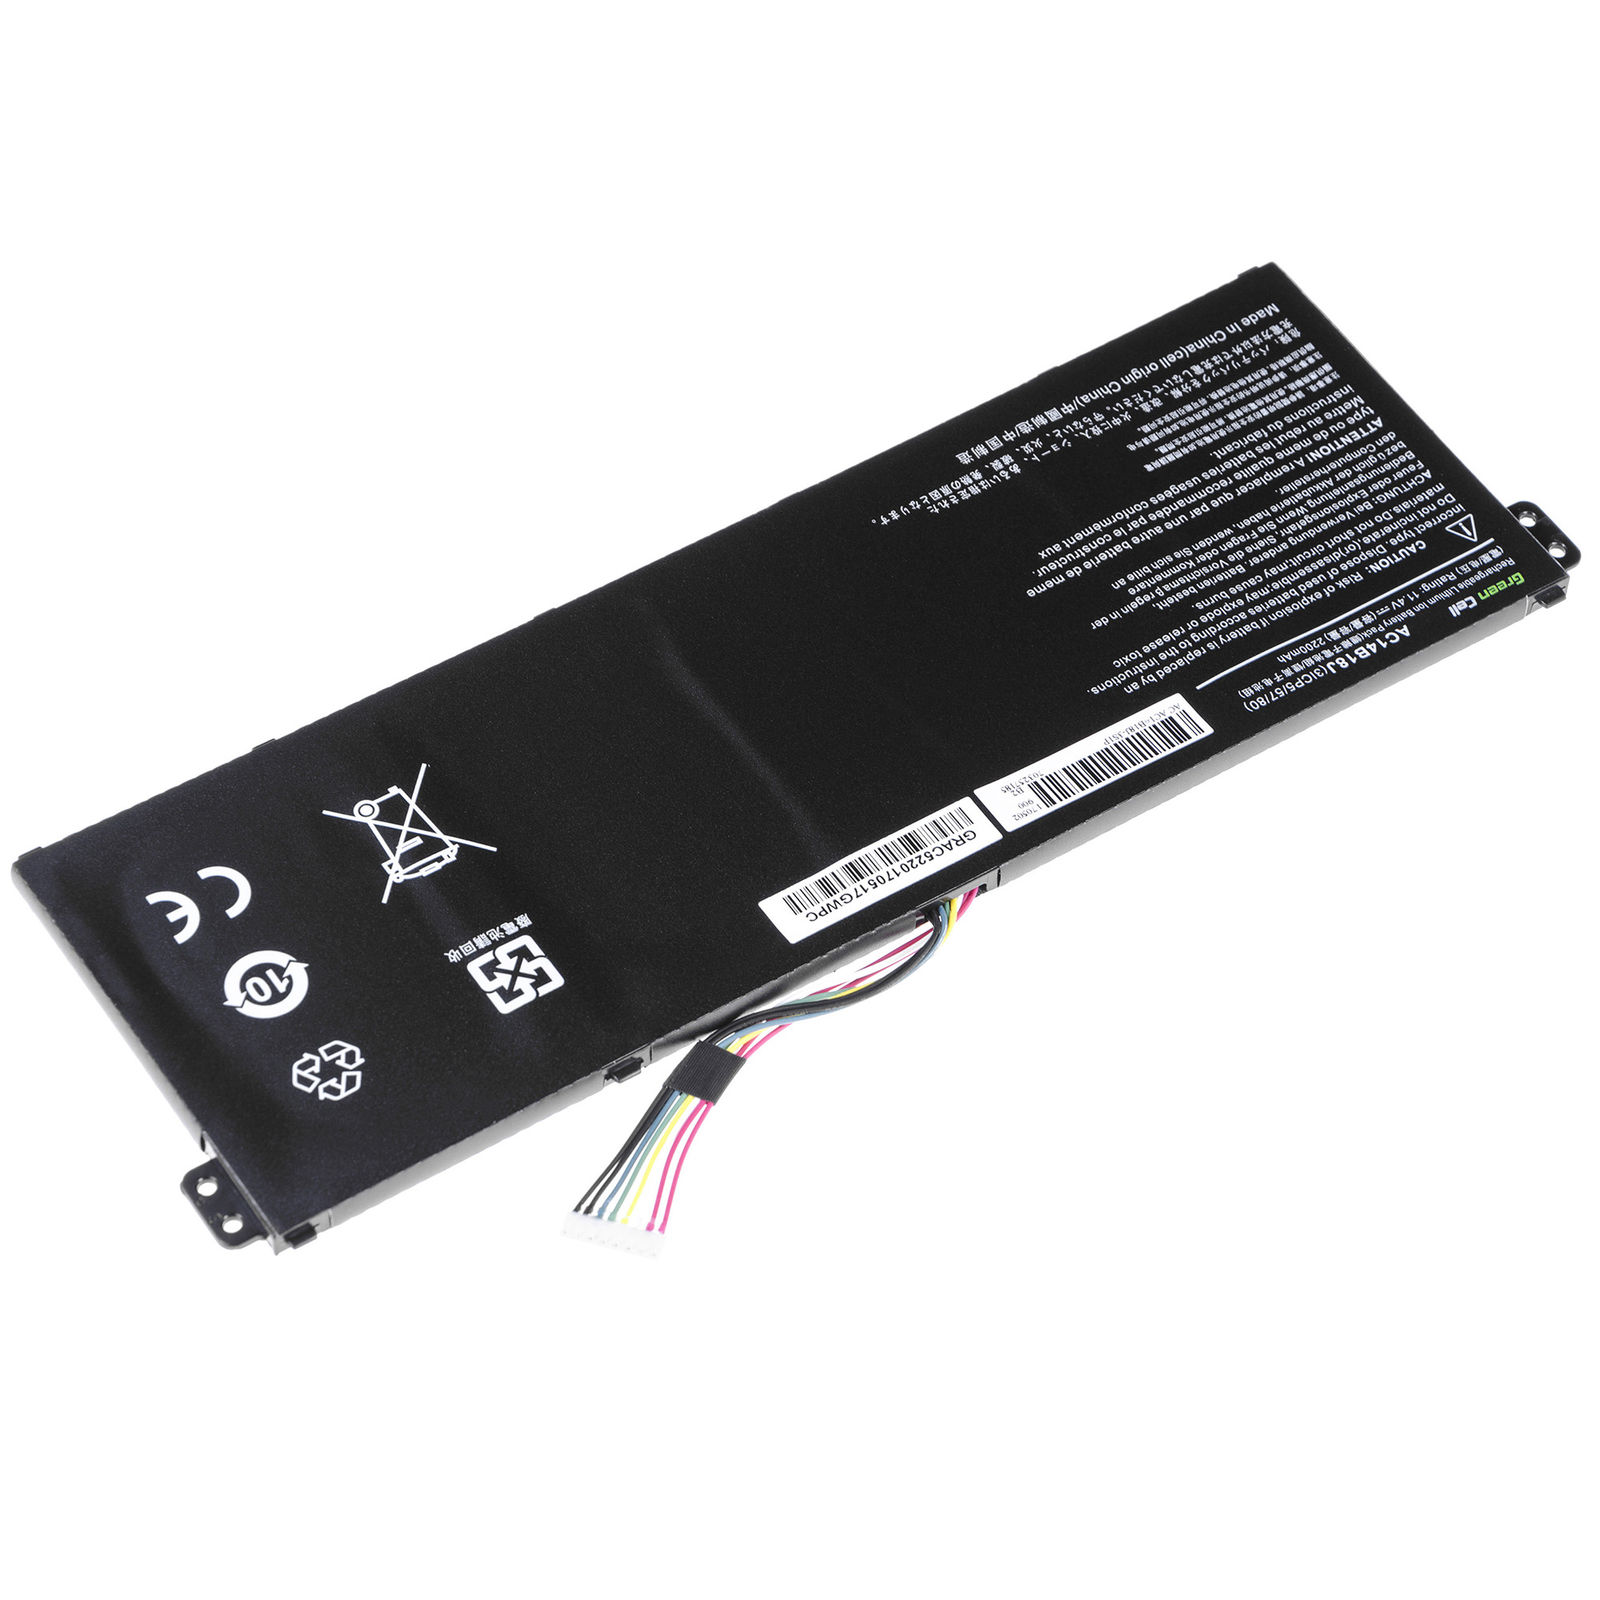 μπαταρία για Acer Aspire ES 17 ES1-731-P6GB ES1-731-P7RK ES1-731-P892 συμβιβάσιμος